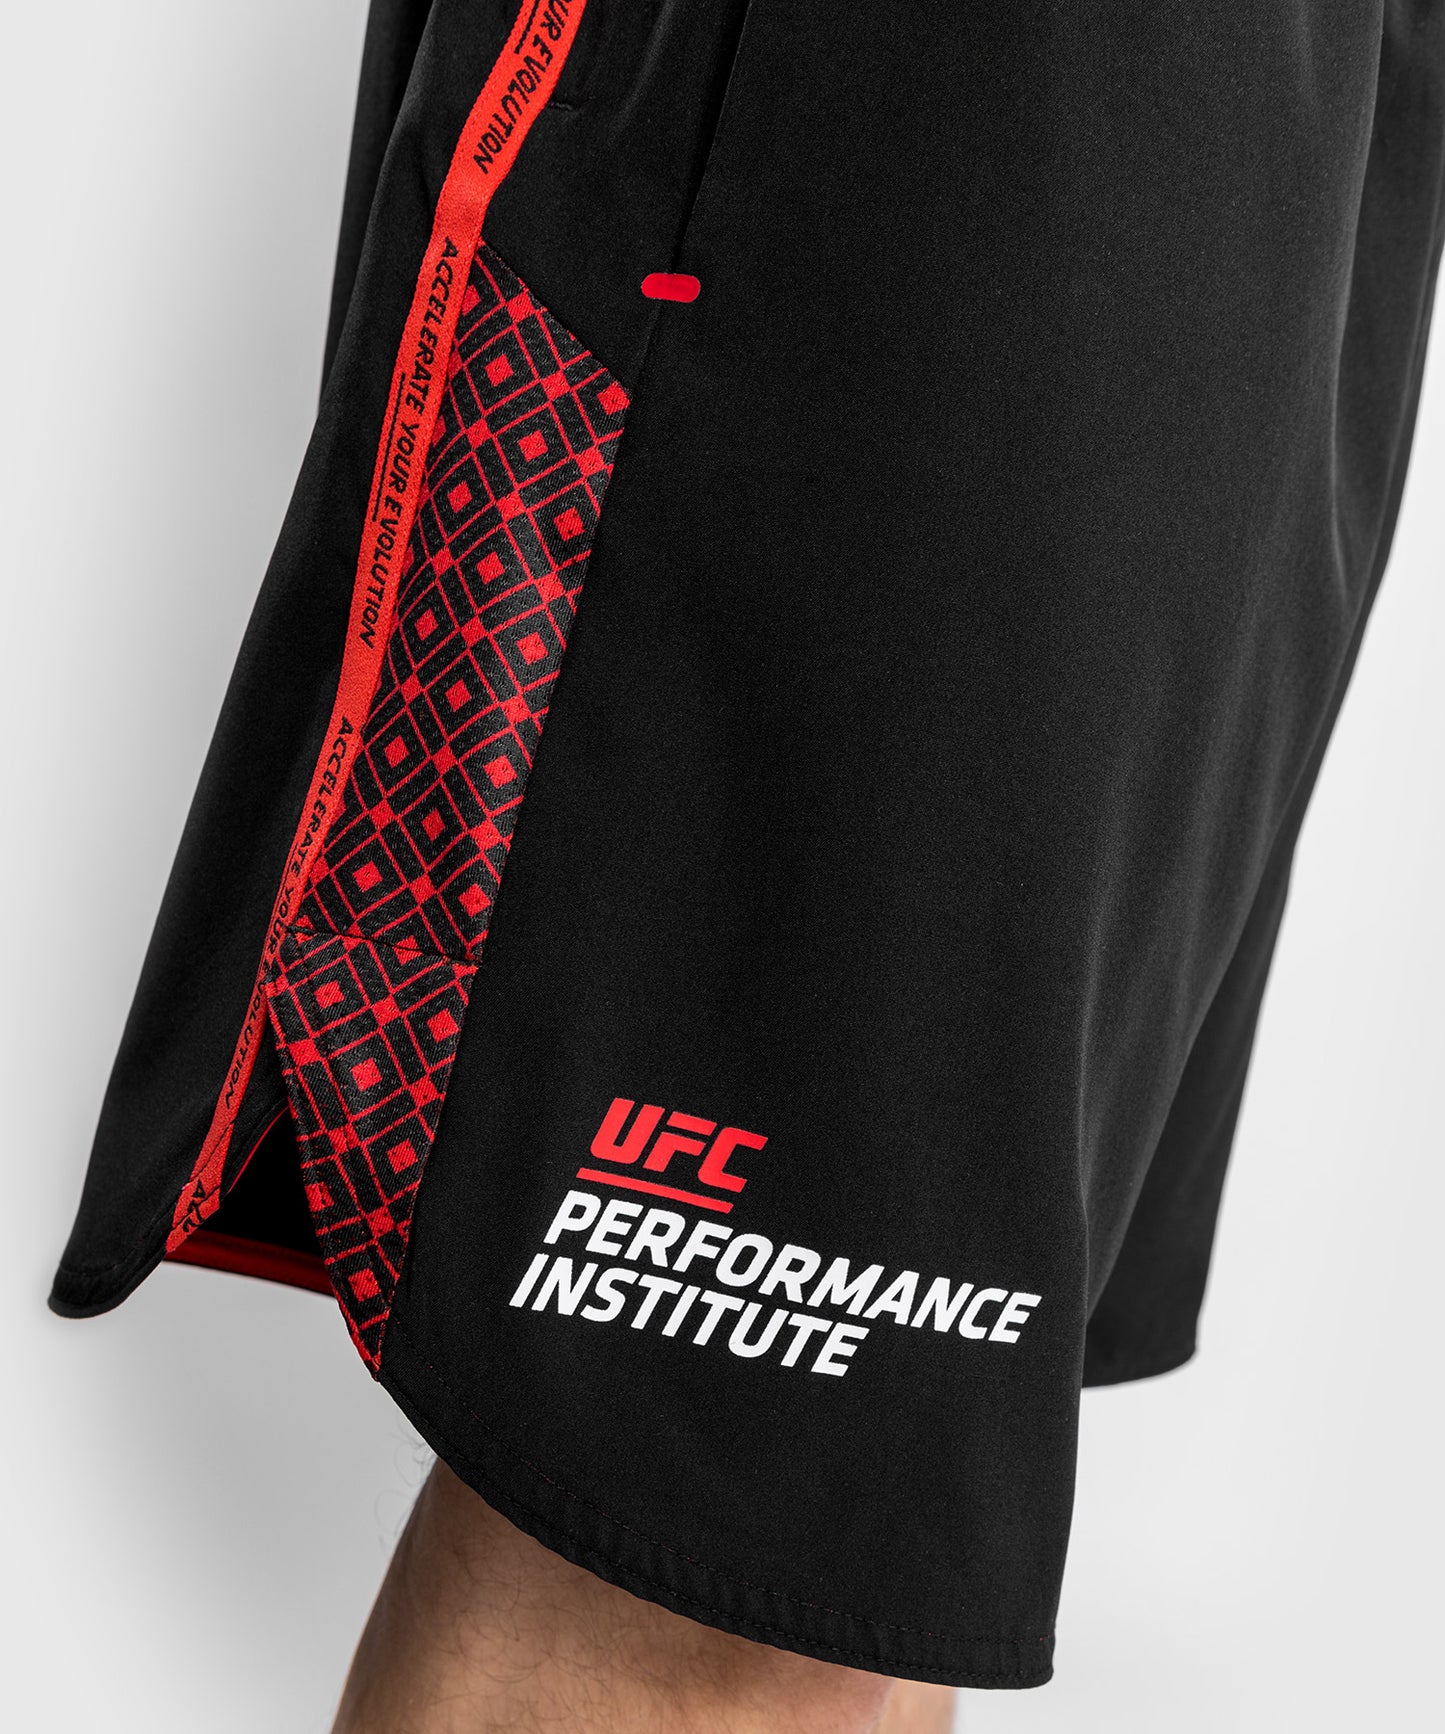 Pantalones cortos de entrenamiento Venum UFC Performance Institute - Negro/Rojo